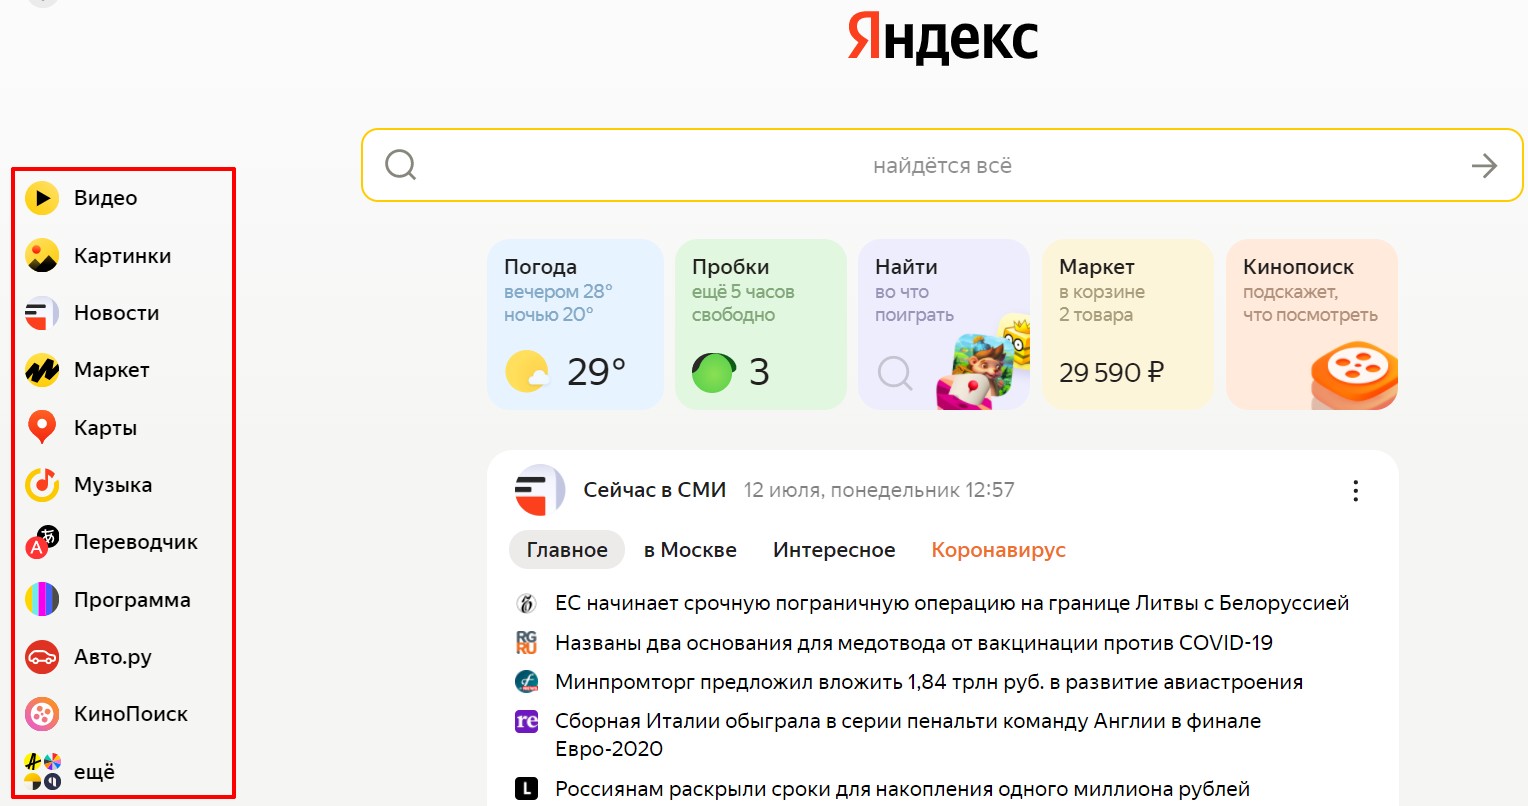 сервисы Яндекса в новом дизайне